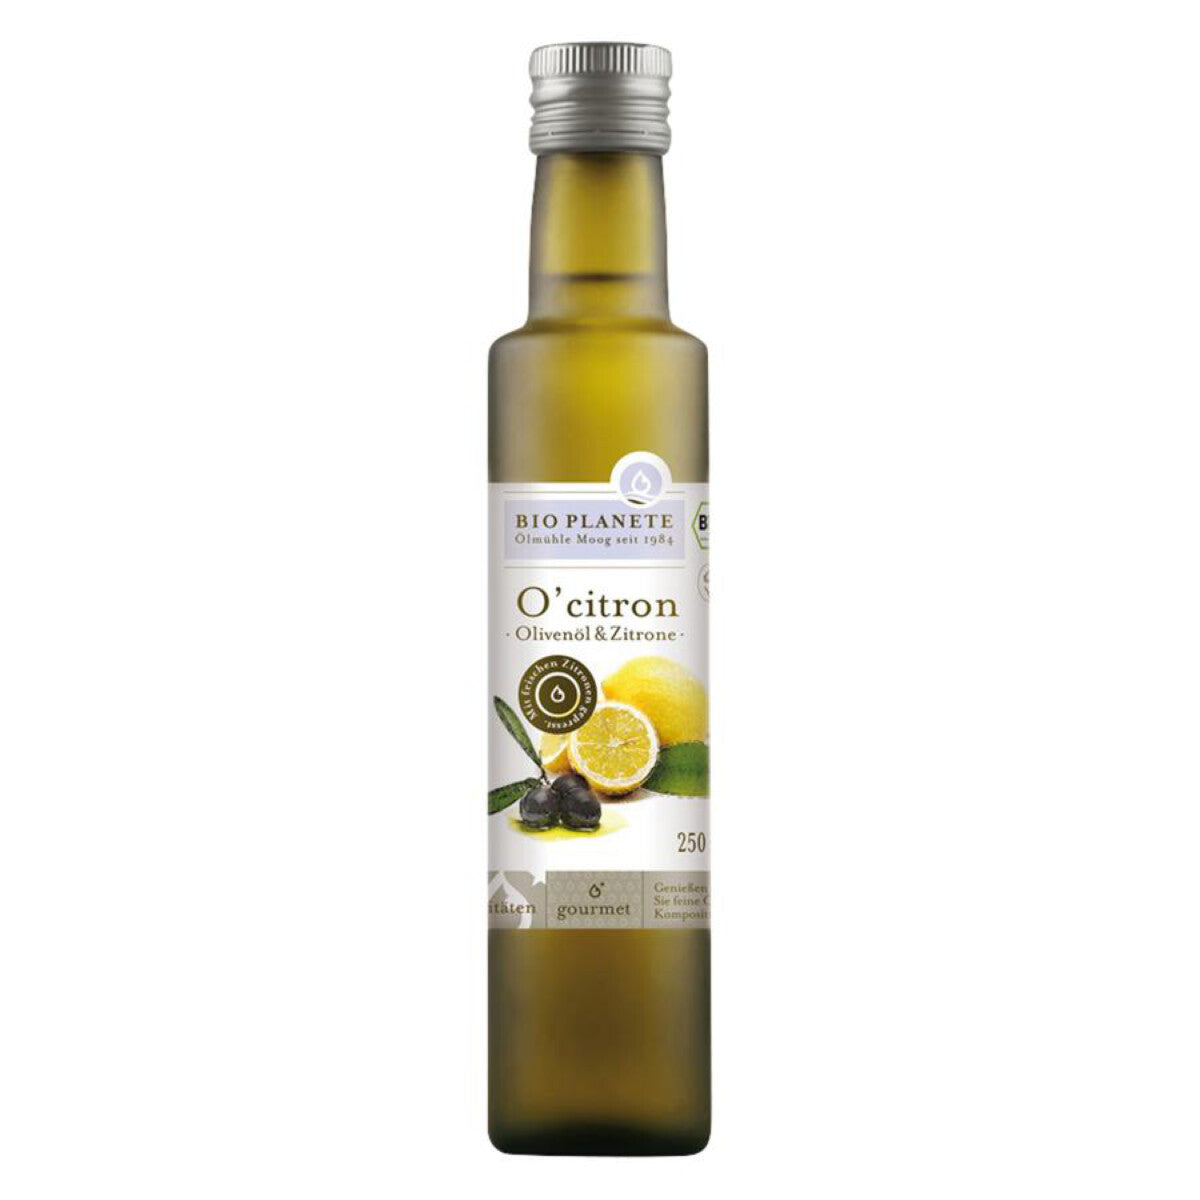 BIO PLANETE O'citron Olivenöl & Zitrone - 0,25 l